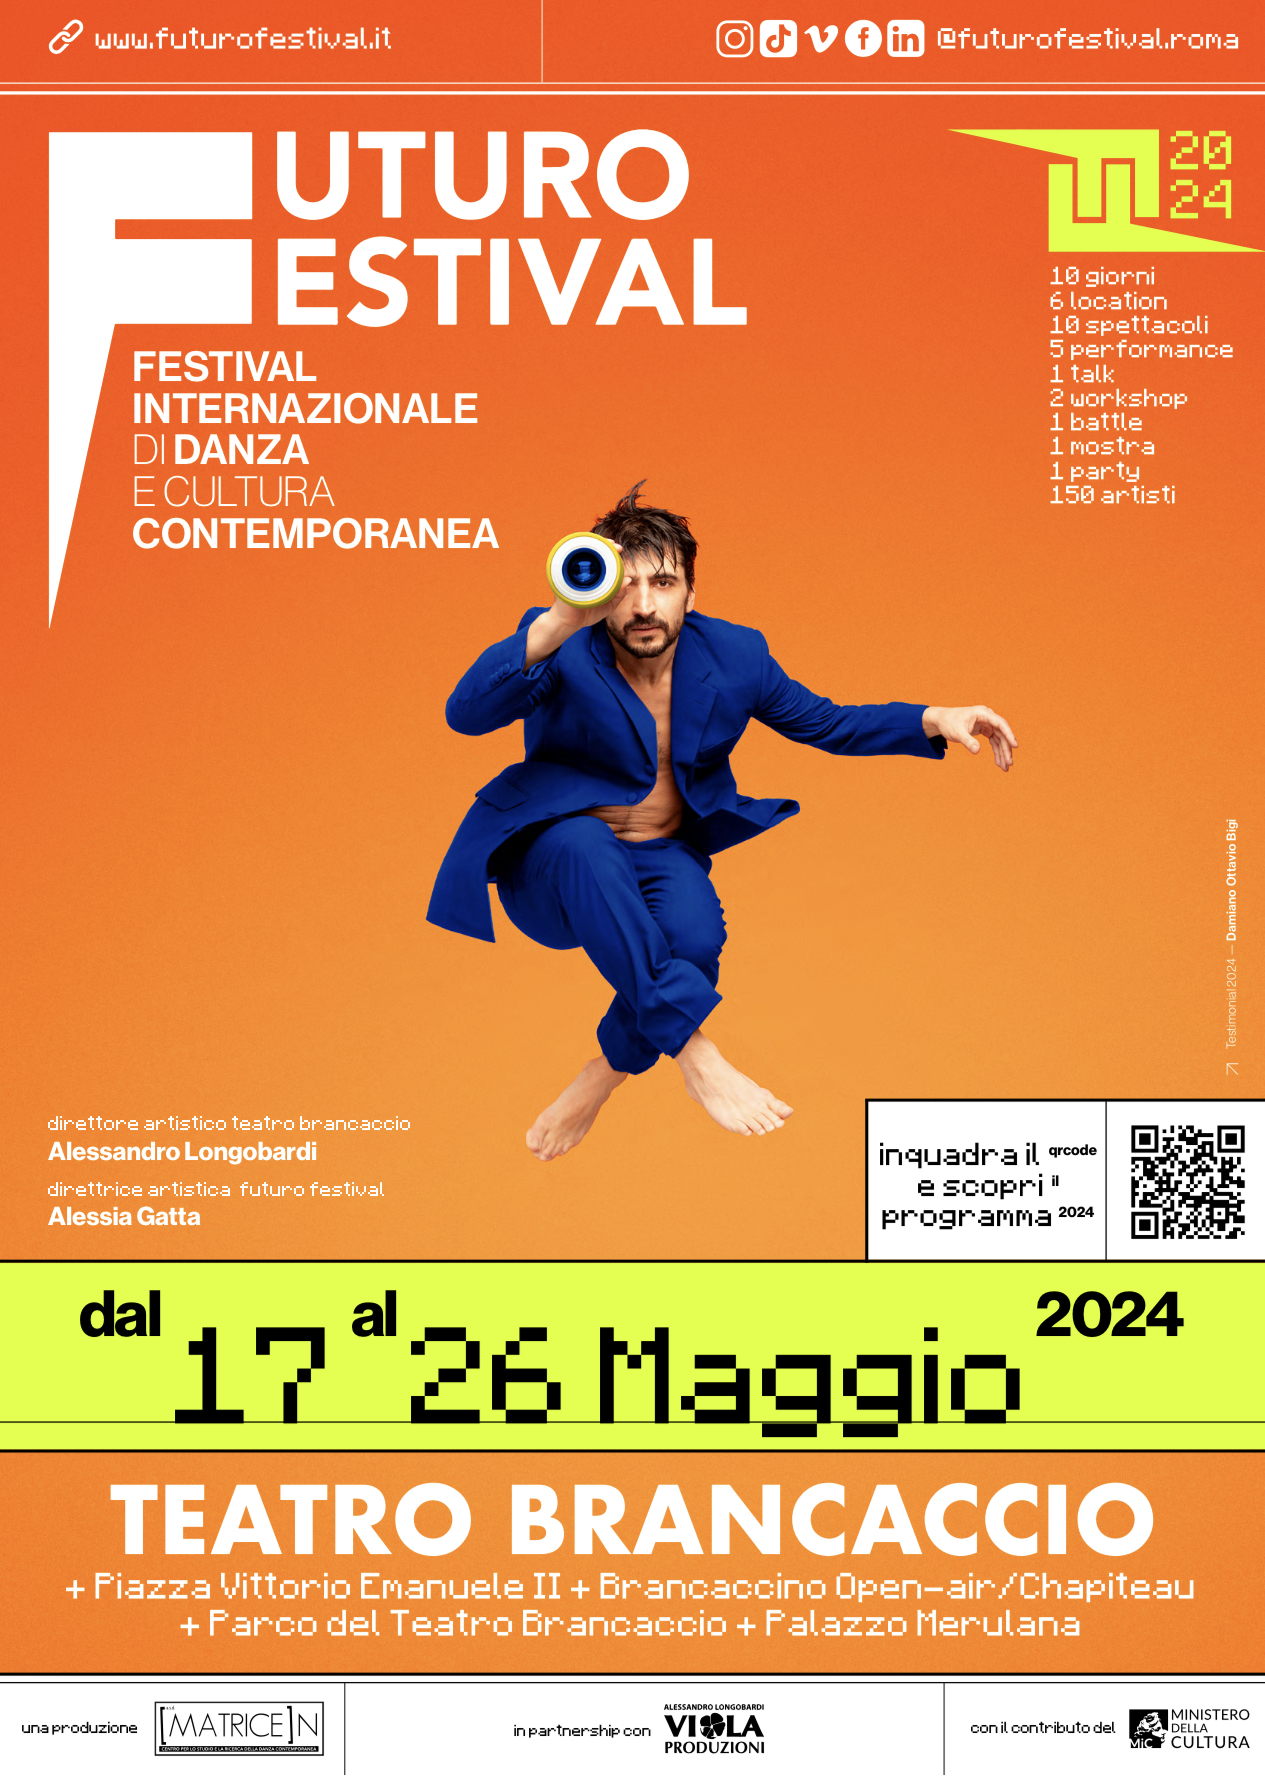 FUTURO FESTIVAL dal 17 maggio Teatro Brancaccio